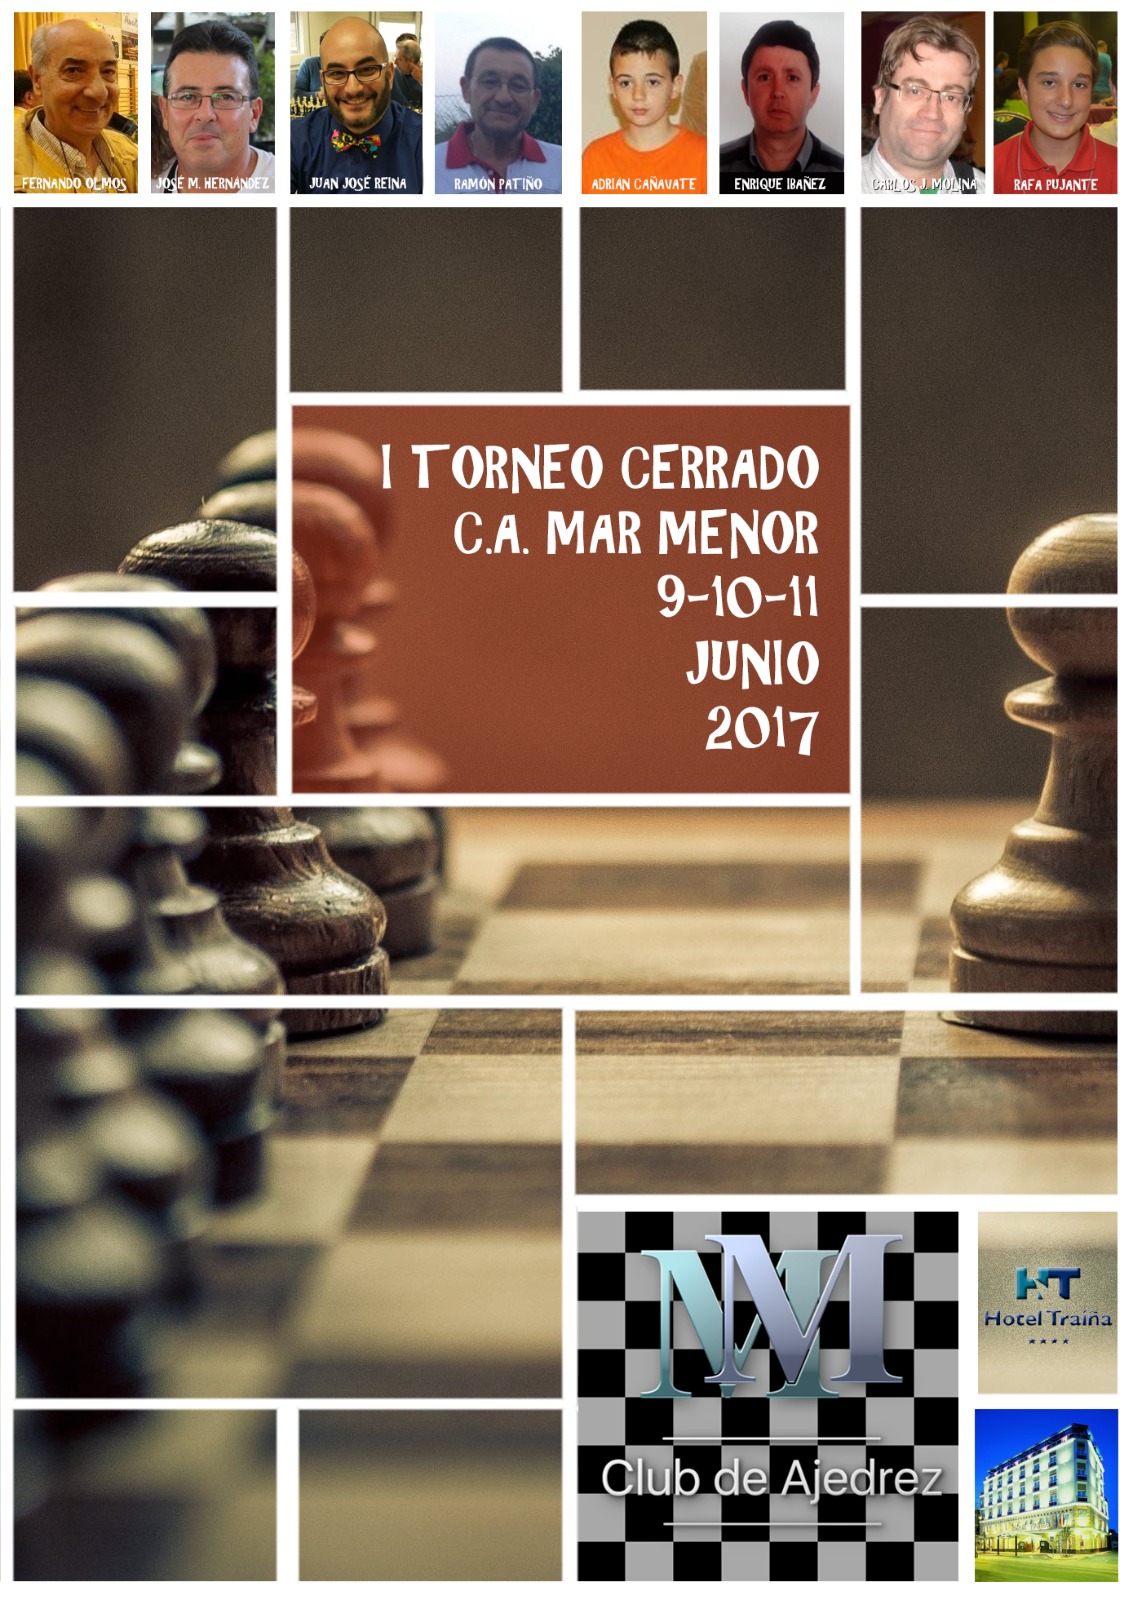 I Torneo Cerrado C.A. Mar Menor